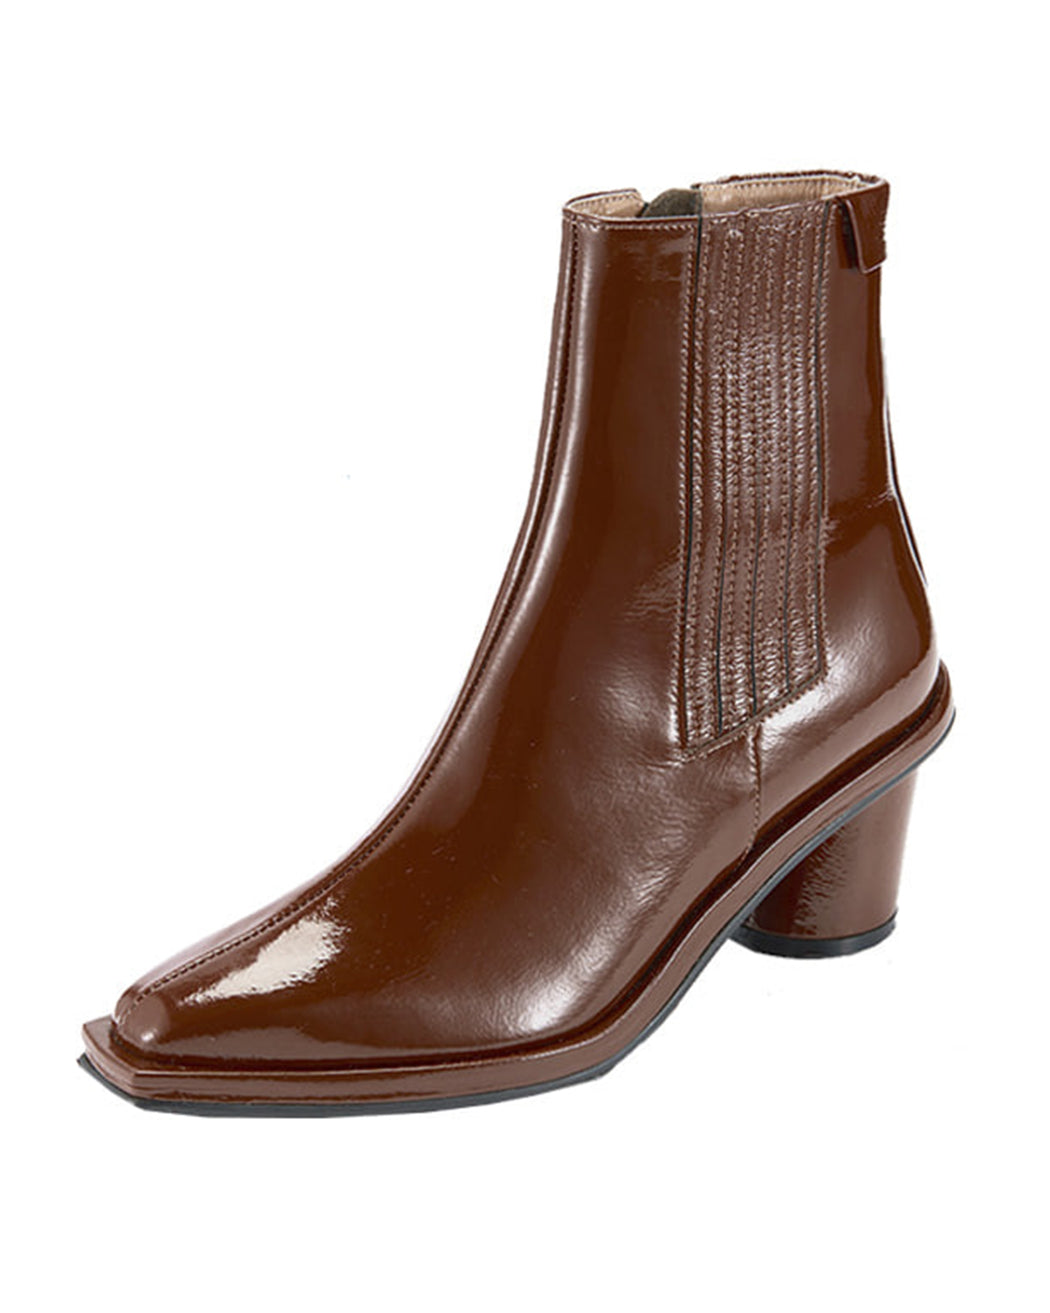 Reike Nen:Oblique Square Chelsea Boots – Brown Patent,ANOMIE